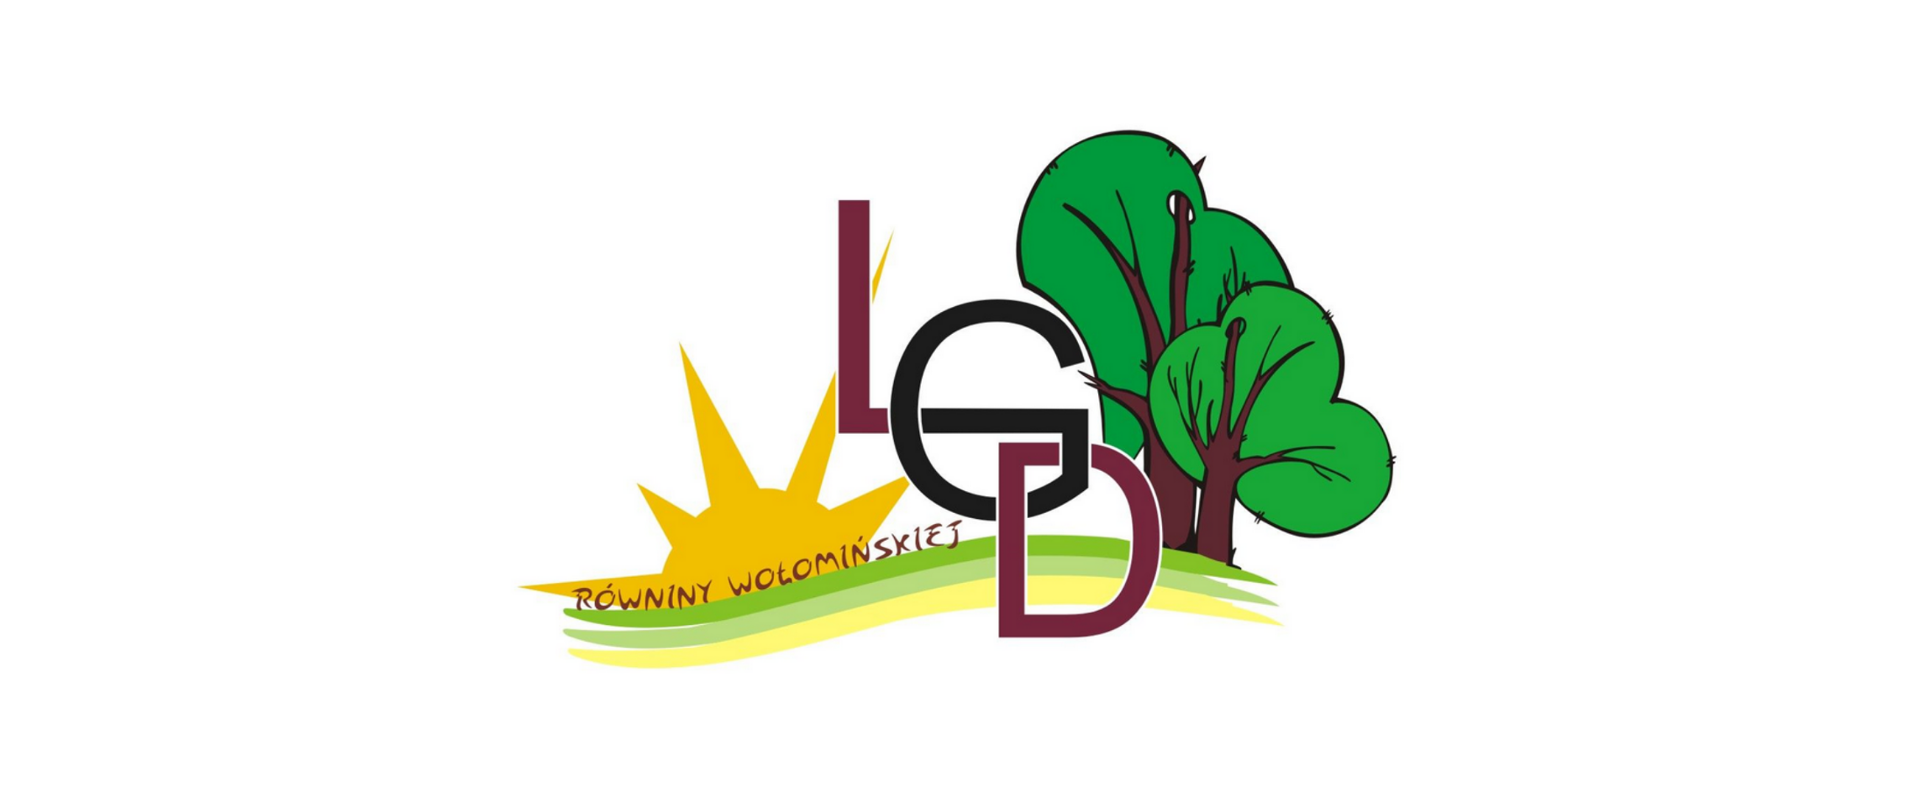 Logo LGD Równiny wołomińskiej składające się z trzech linii symbolizujące niziny zza których wychodzi słońce, Litery LGD oraz dwa drzewa.